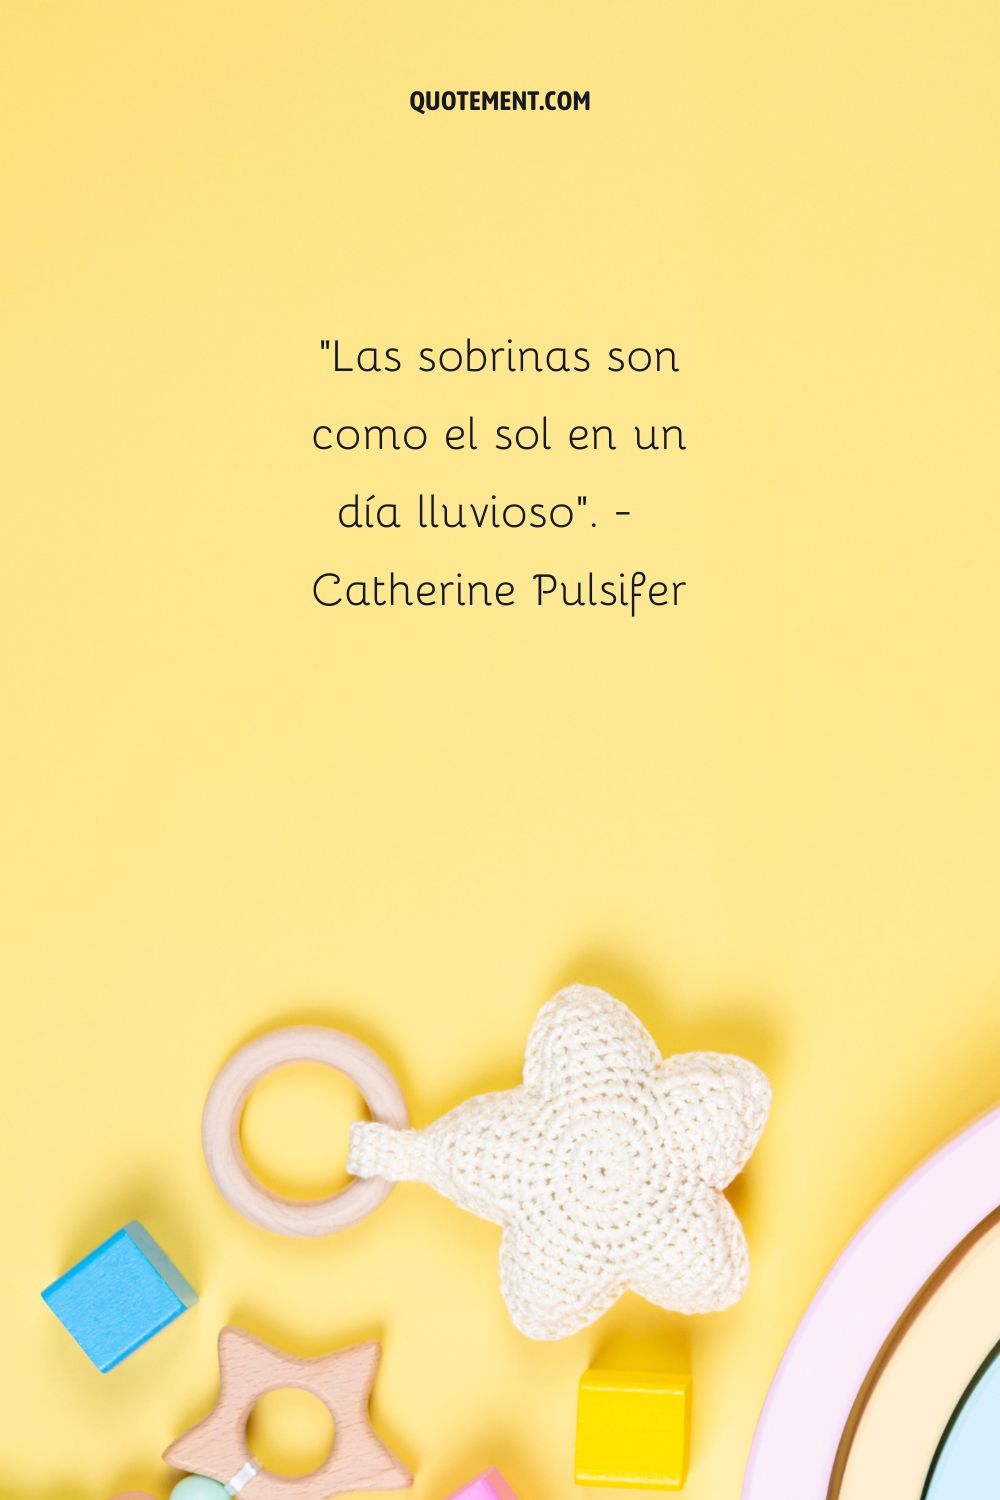 "Las sobrinas son como el sol en un día lluvioso". - Catherine Pulsifer